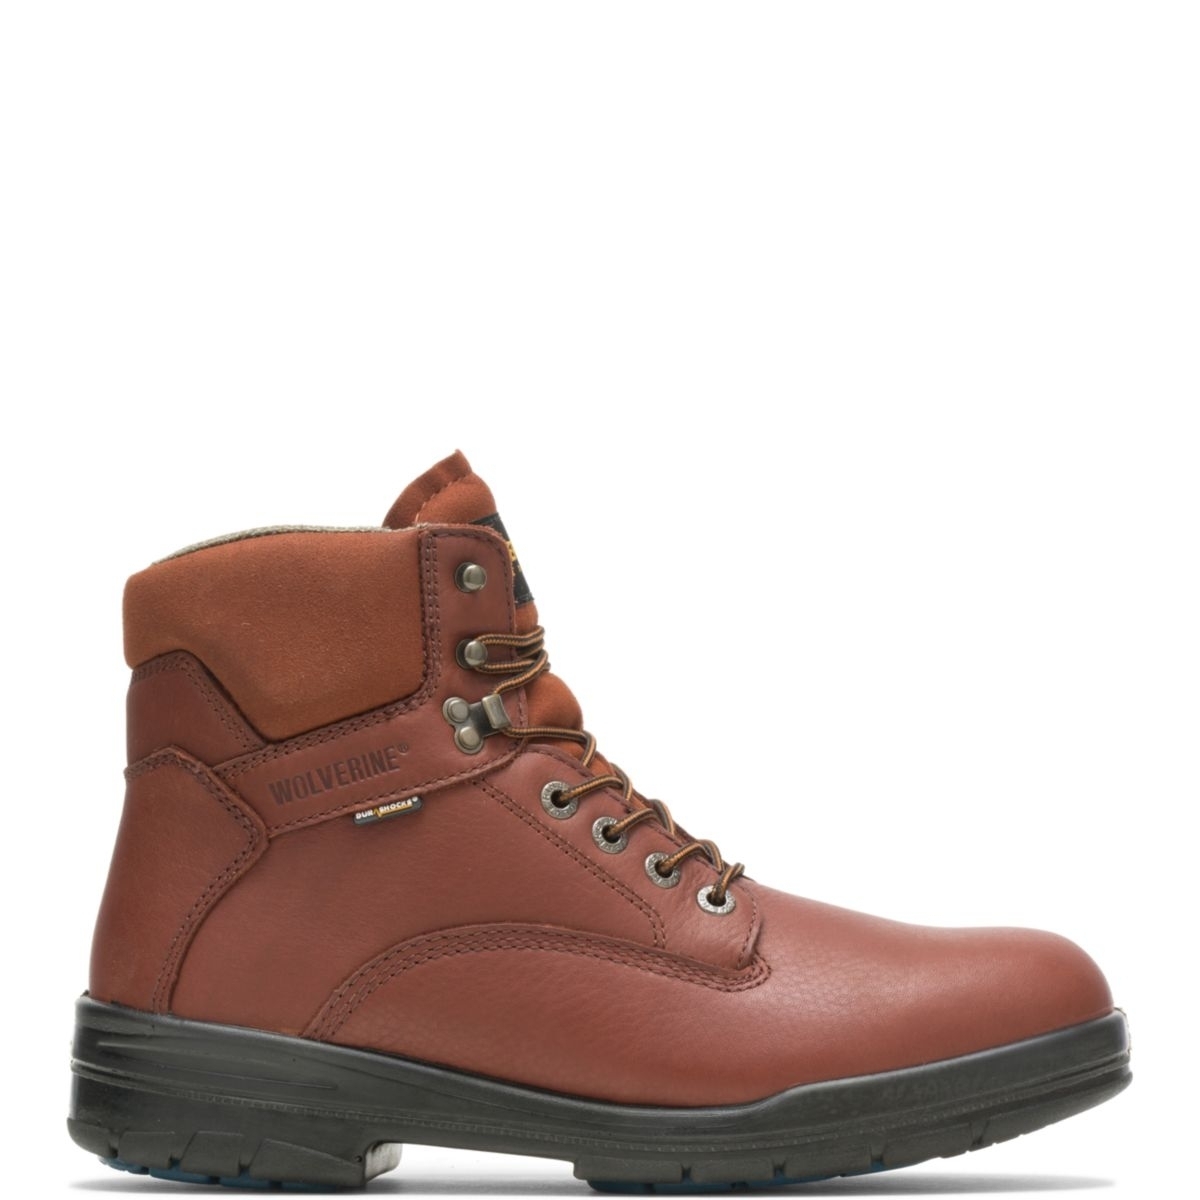 WOLVERINE Men's 6 DuraShocksÂ® Steel Toe Direct-Attach Work Boot Brown - W03120 BROWN - BROWN, 7.5